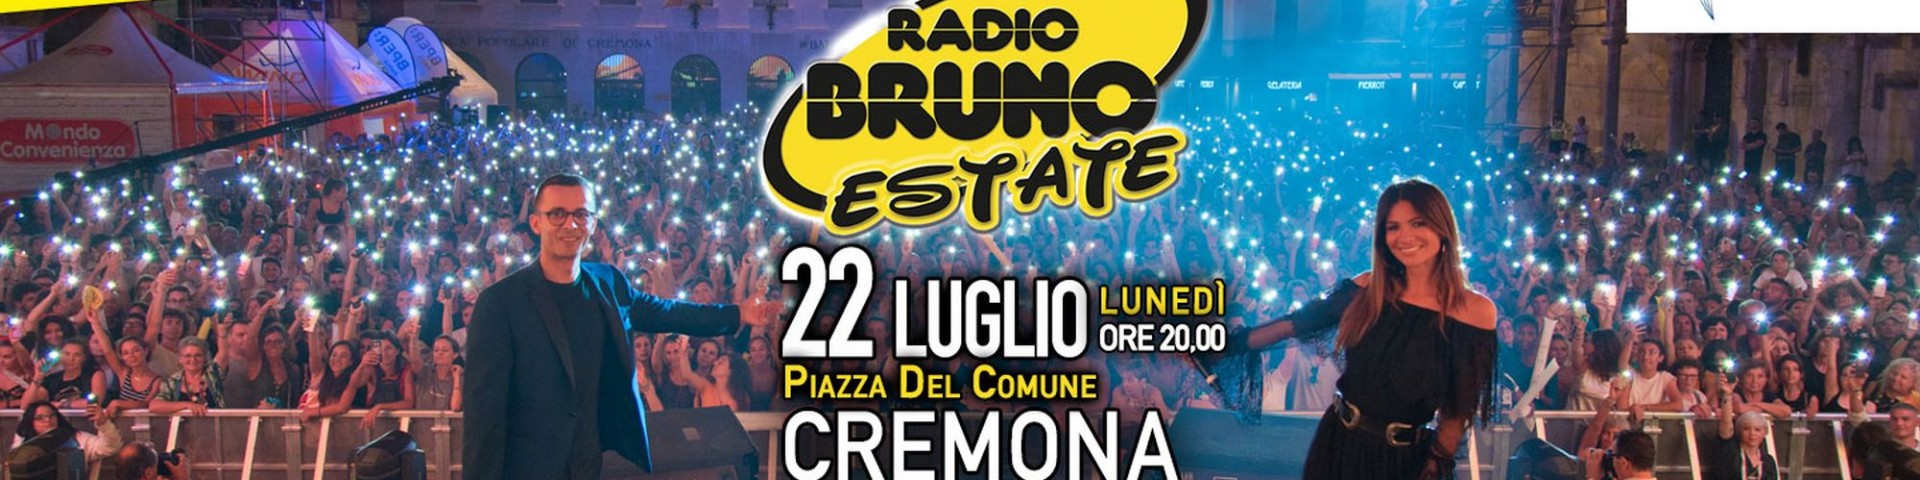 Radio Bruno Estate 2019 a Cremona: scaletta e ordine di uscita